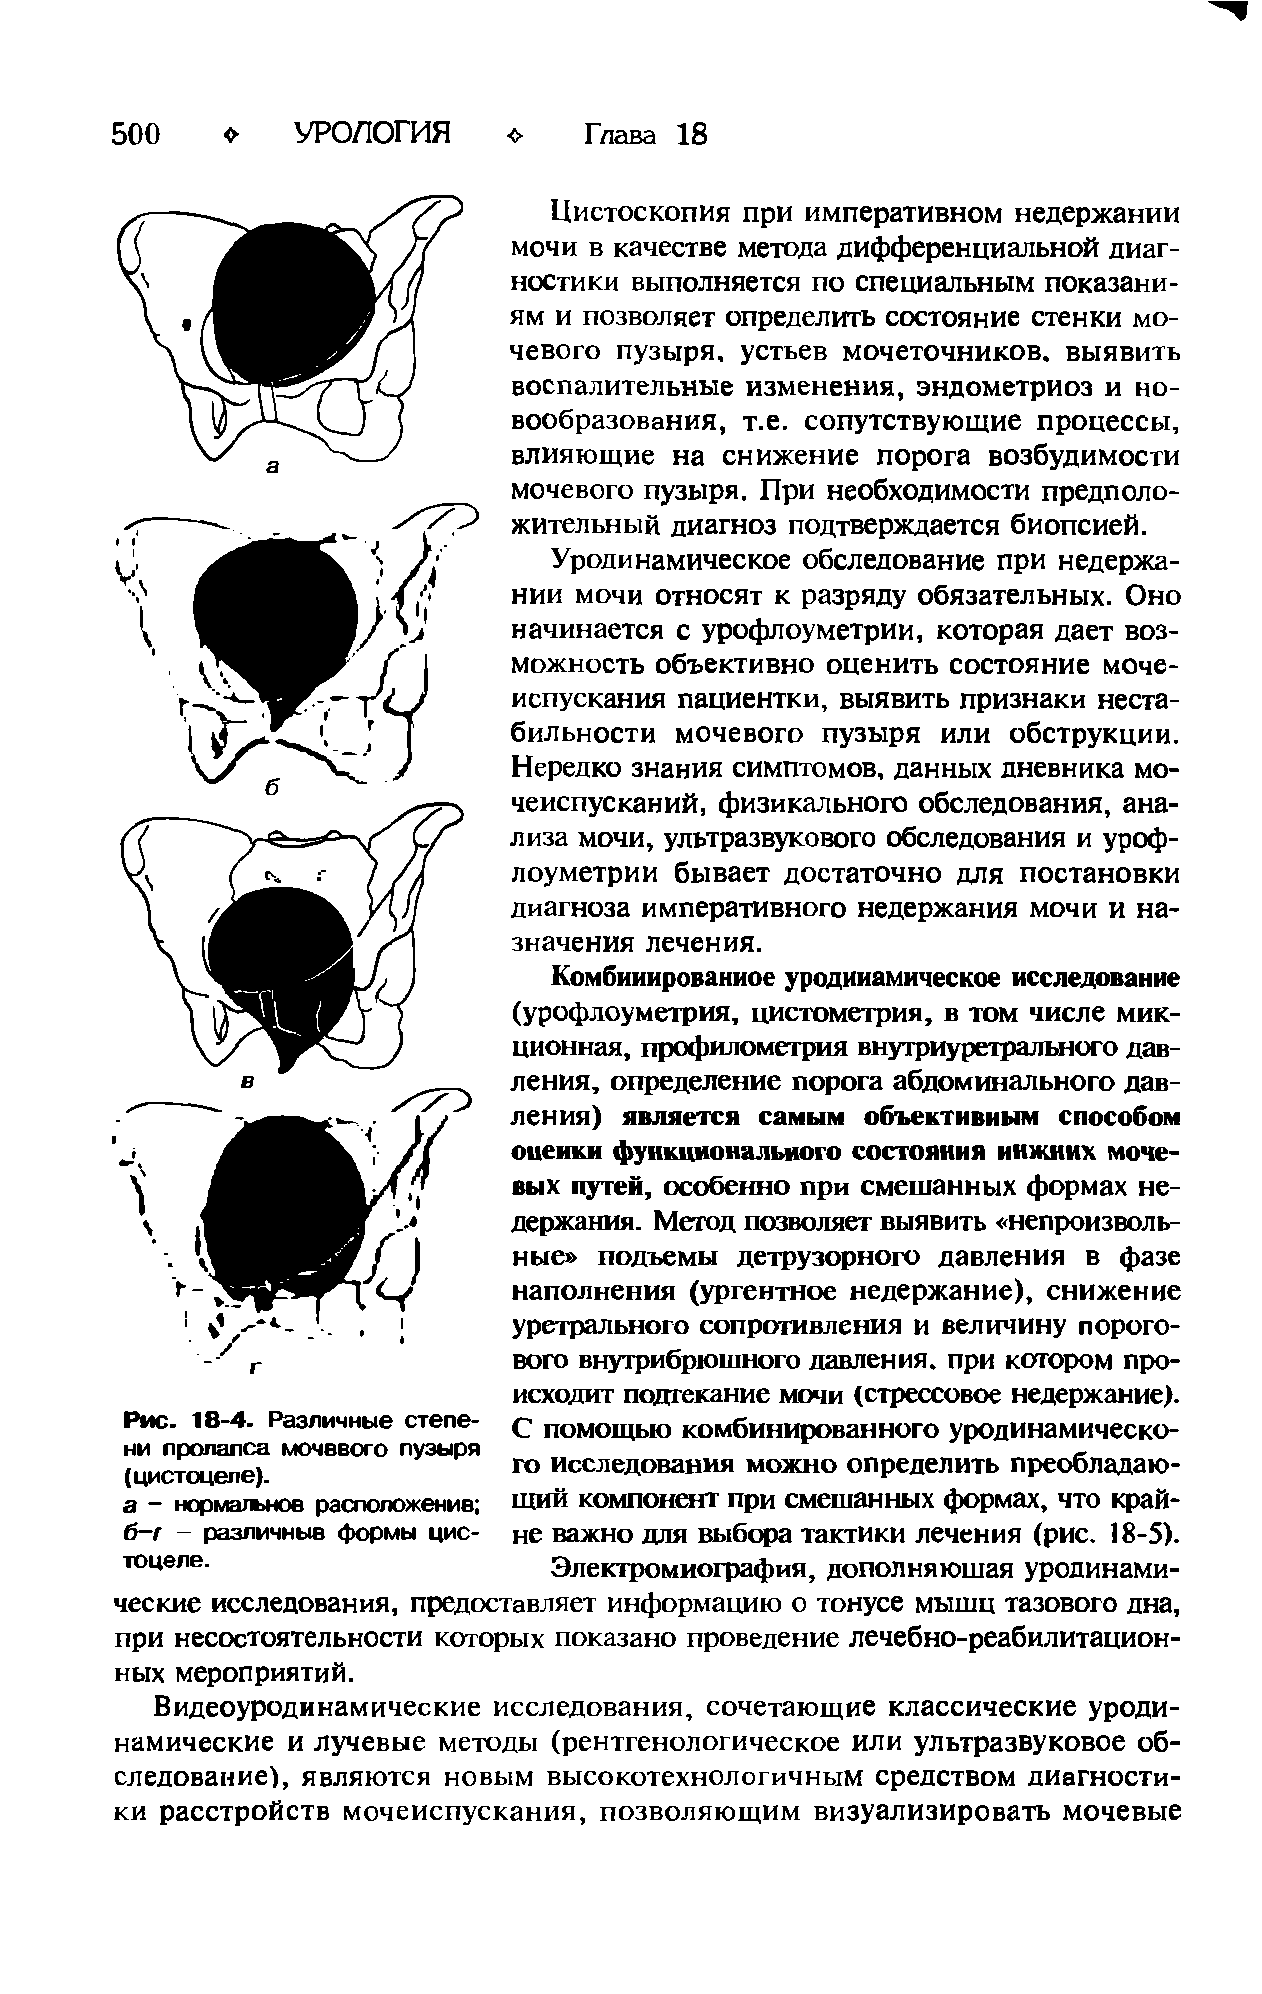 Рис. 18-4. Различные степени пролапса мочевого пузыря (цистоцеле).